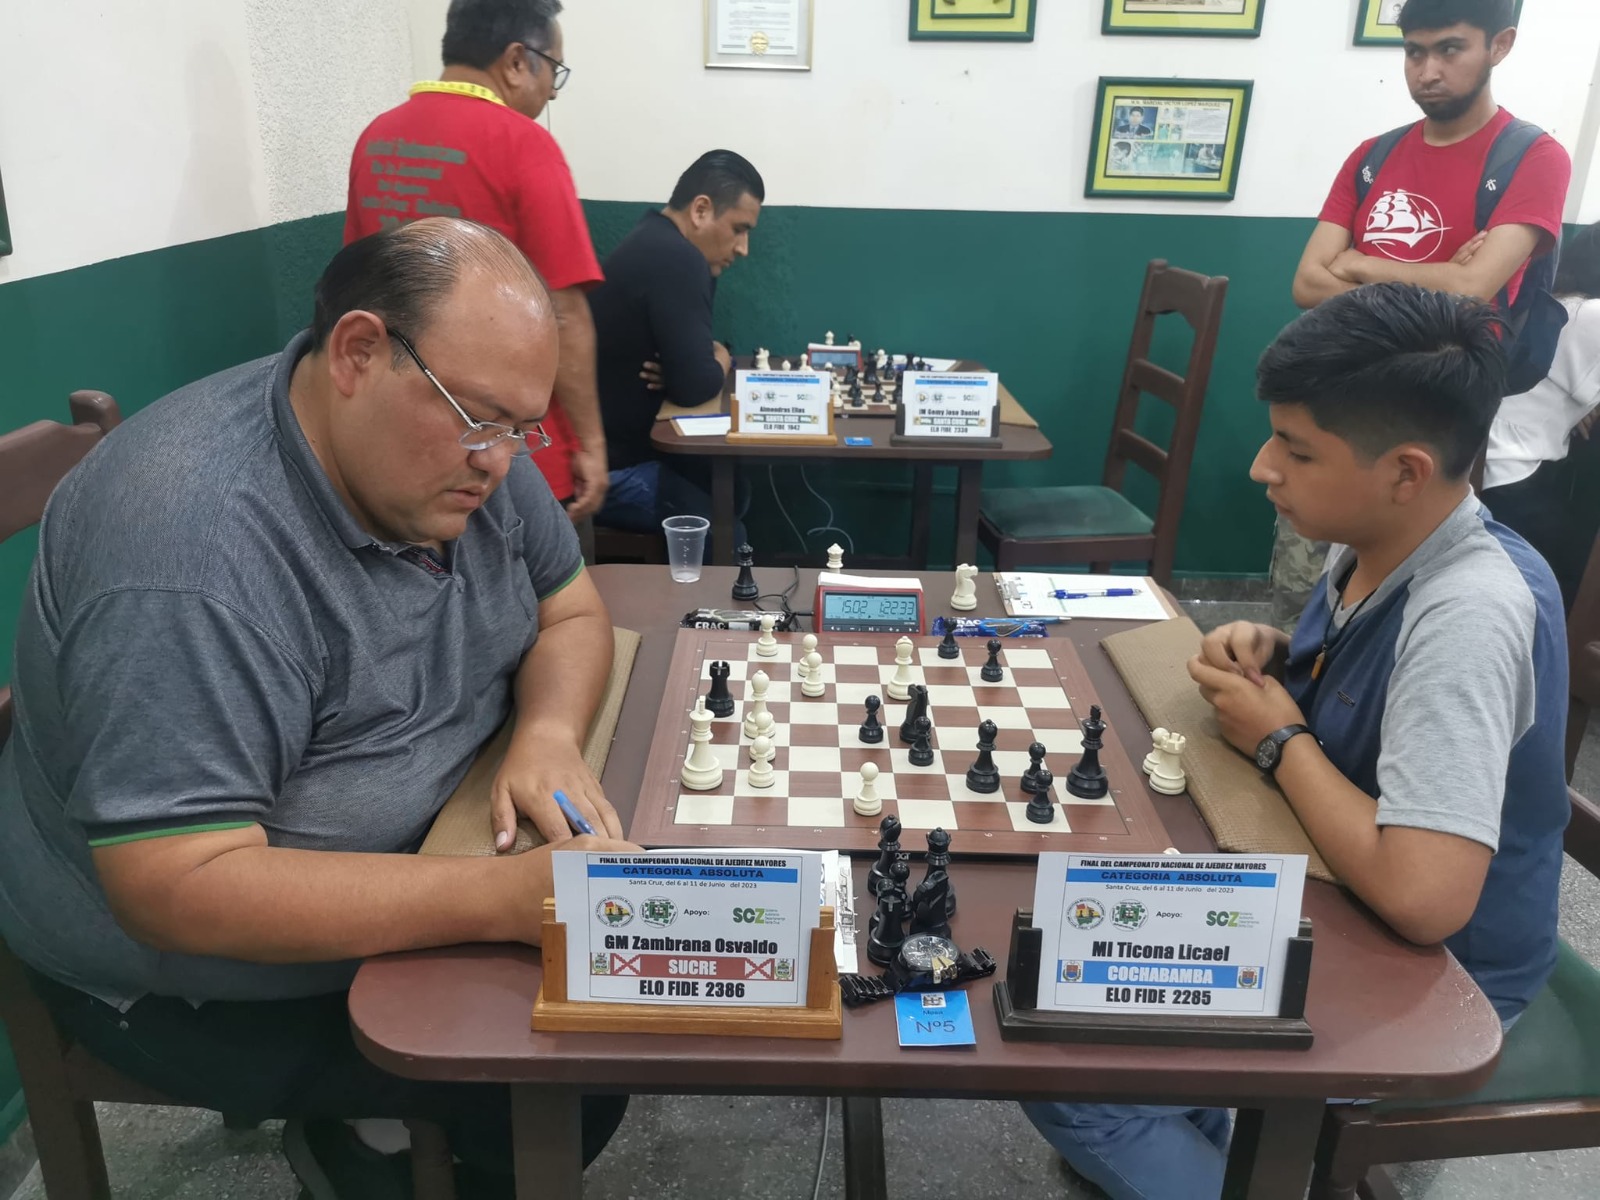 ajedrez, MOVIMIENTO DE LAS PIEZAS - Profesores de Bolivia